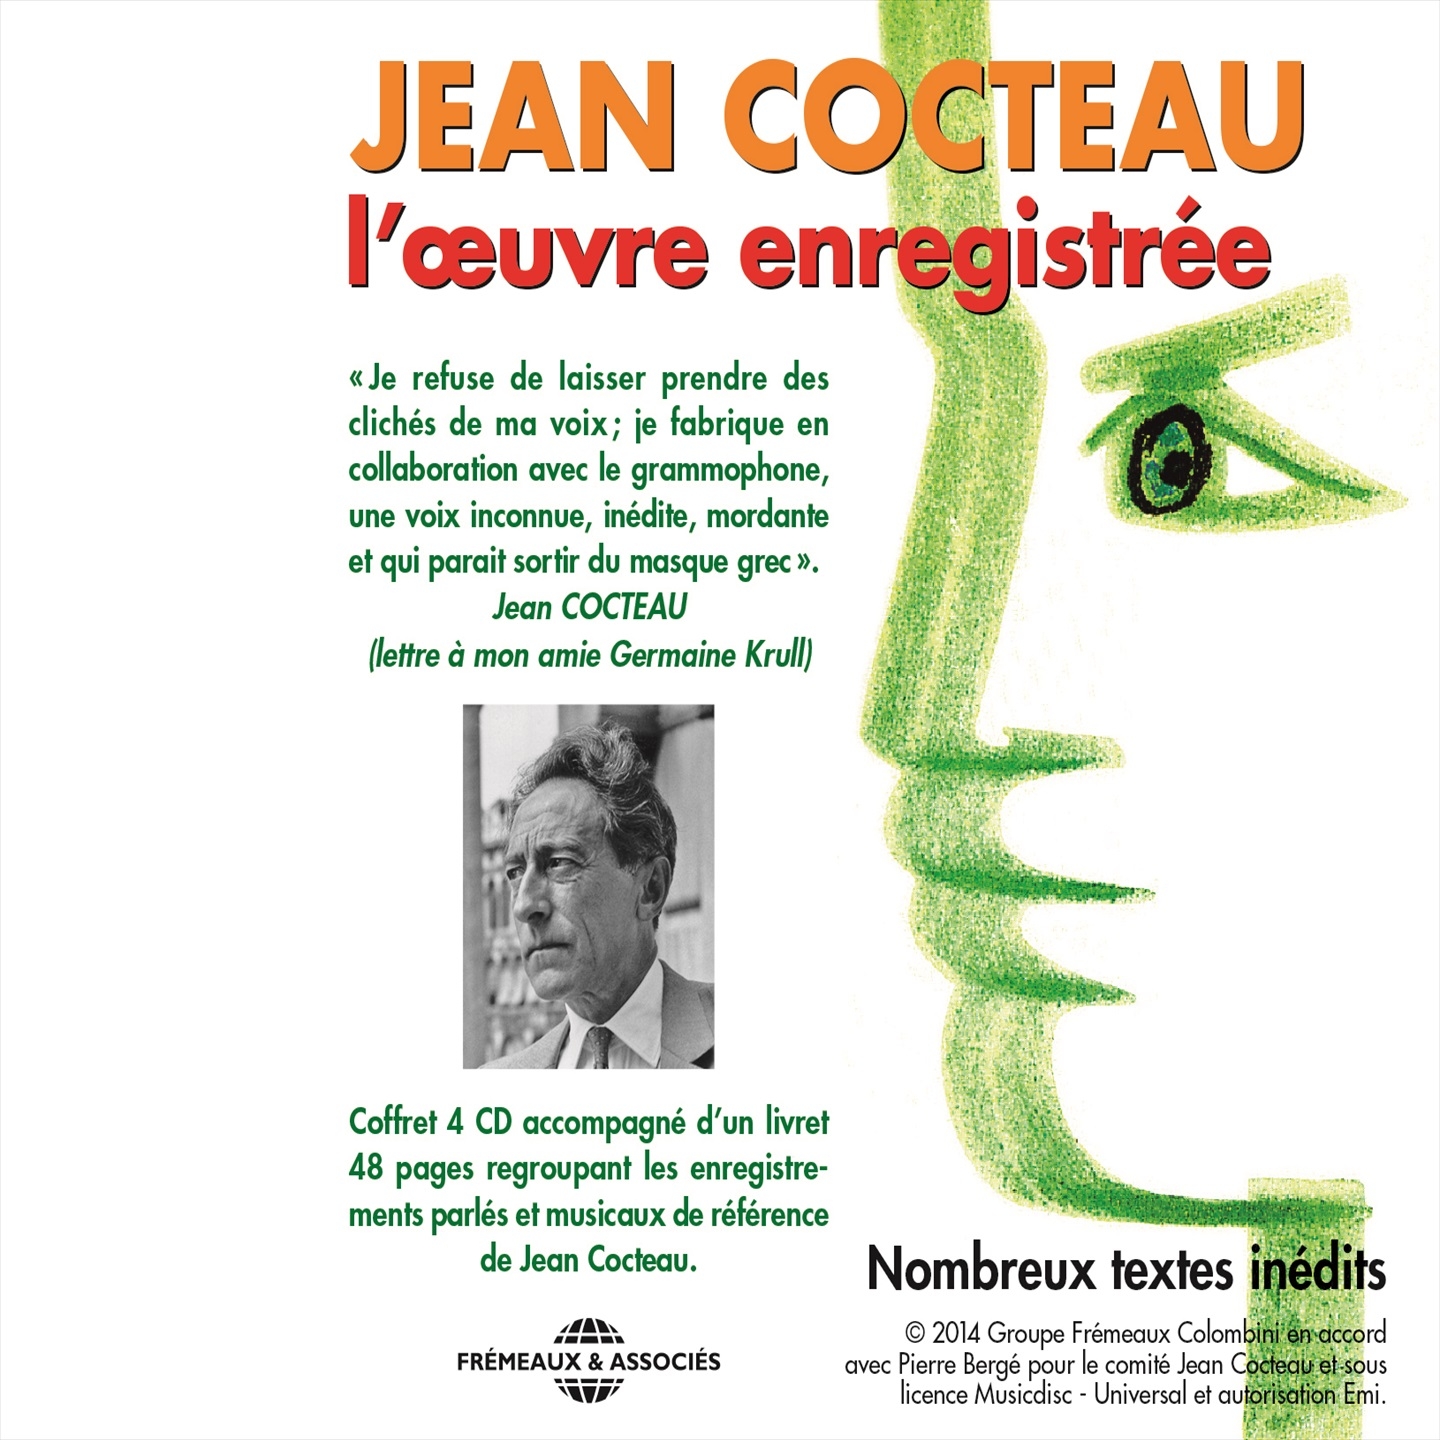 Jean cocteau pre sente edith piaf